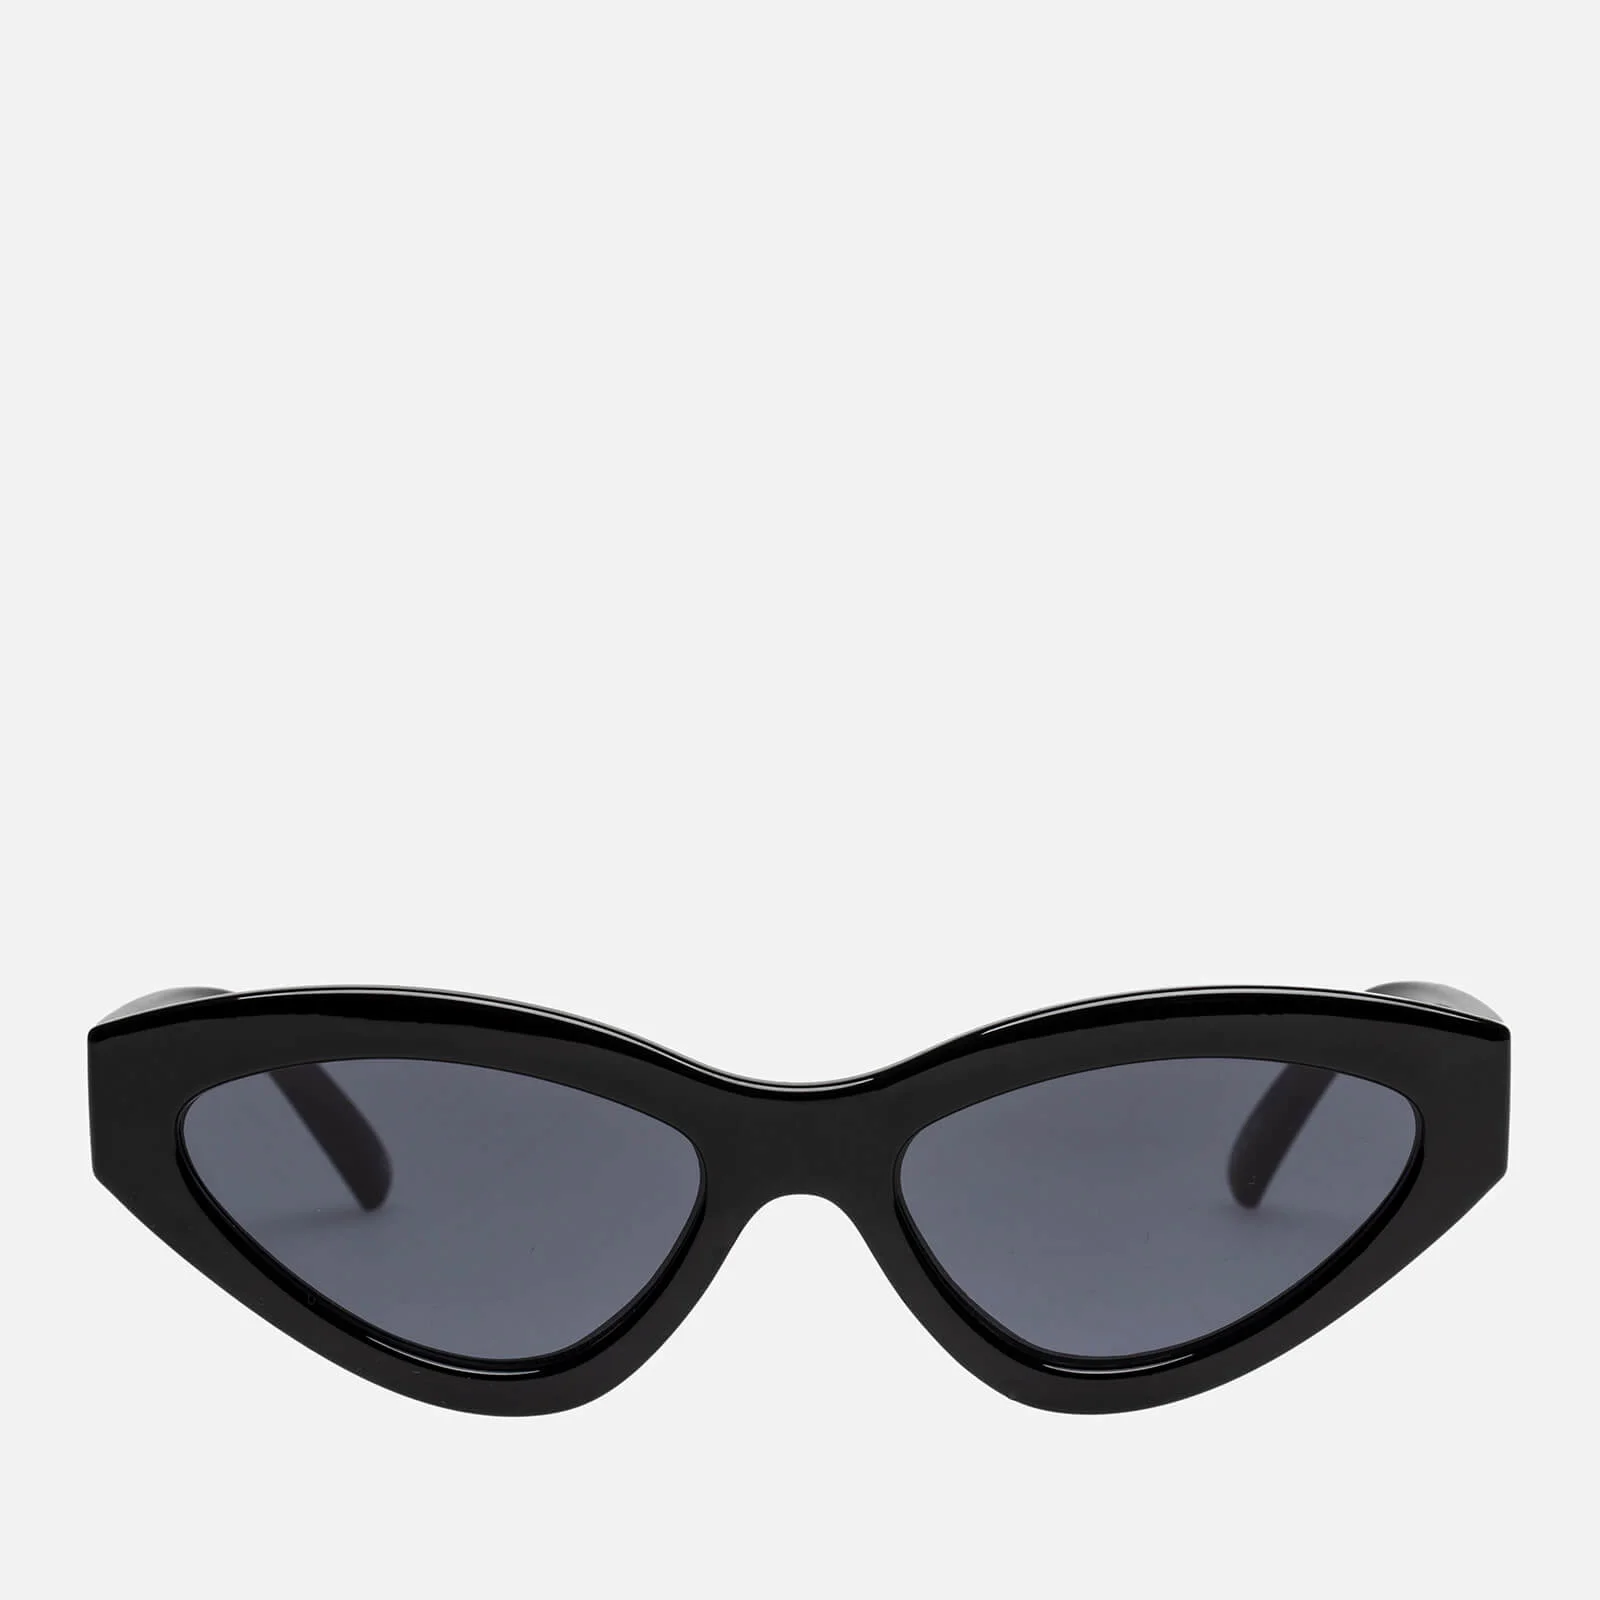 Le Specs Women's Synthcat Sunglasses - Black Image 1